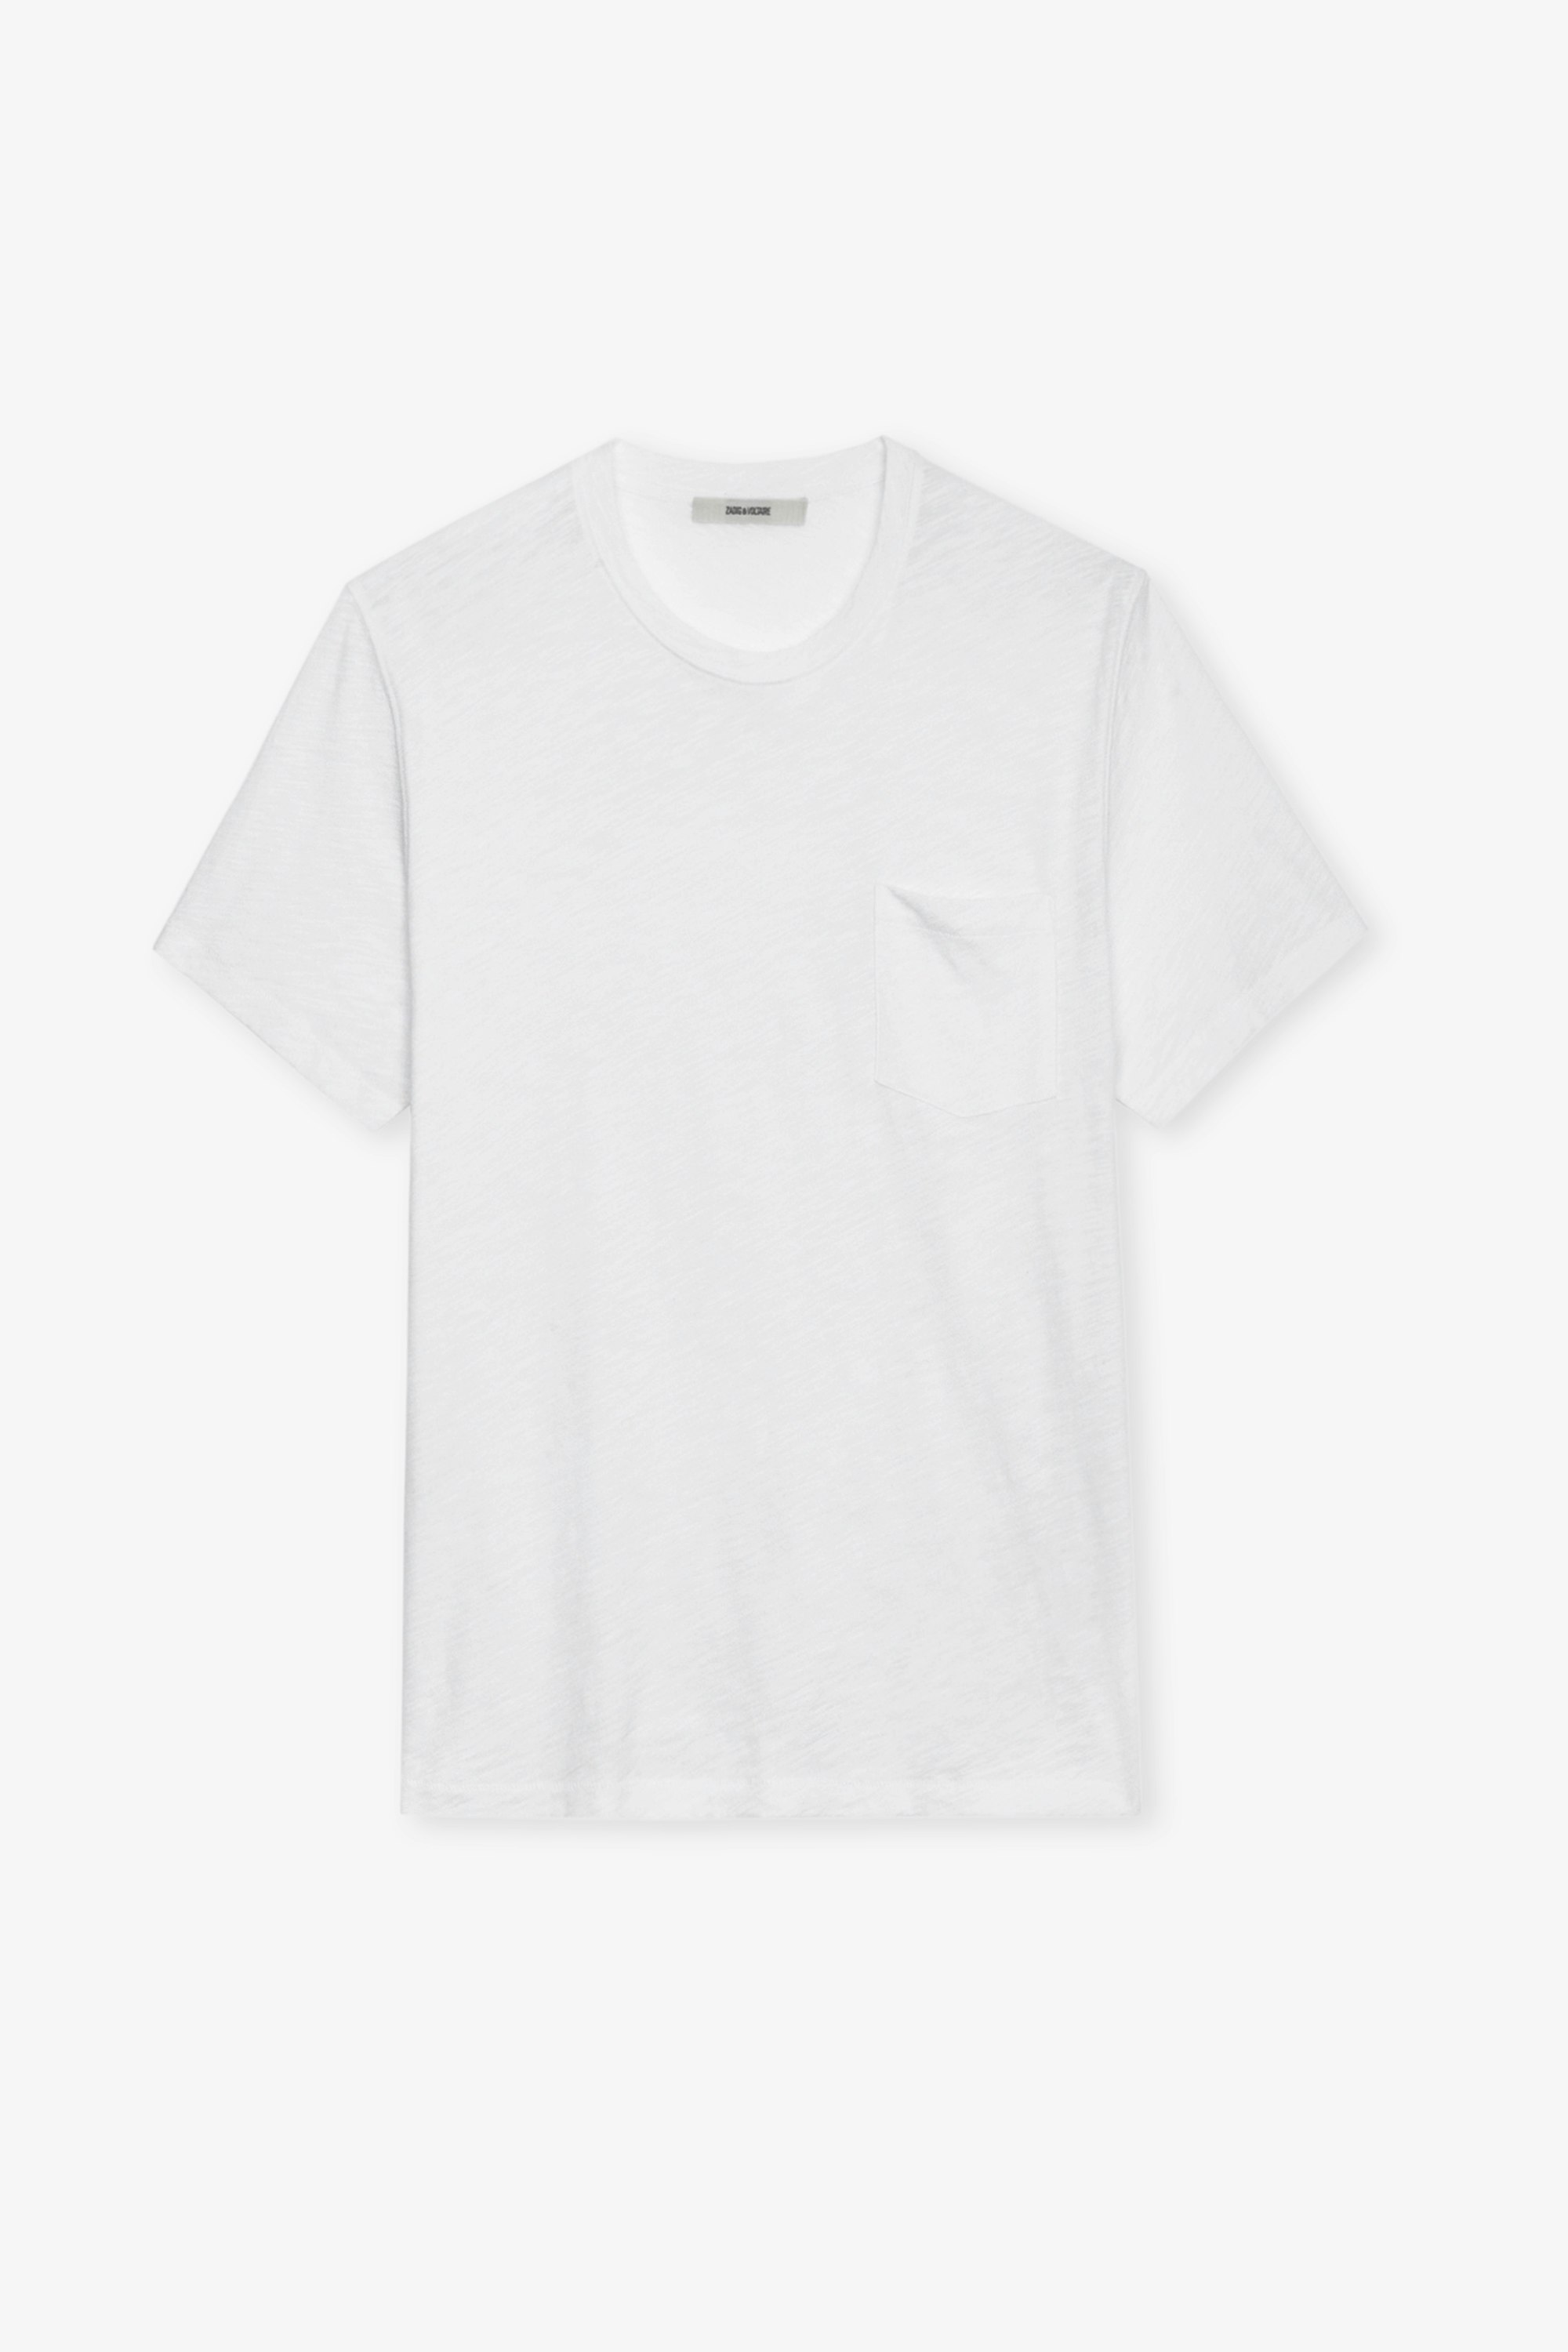 T-shirt Stockholm Flamme - T-shirt en coton flammé blanc orné d'une poche poitrine et d'un motif Skull au dos.